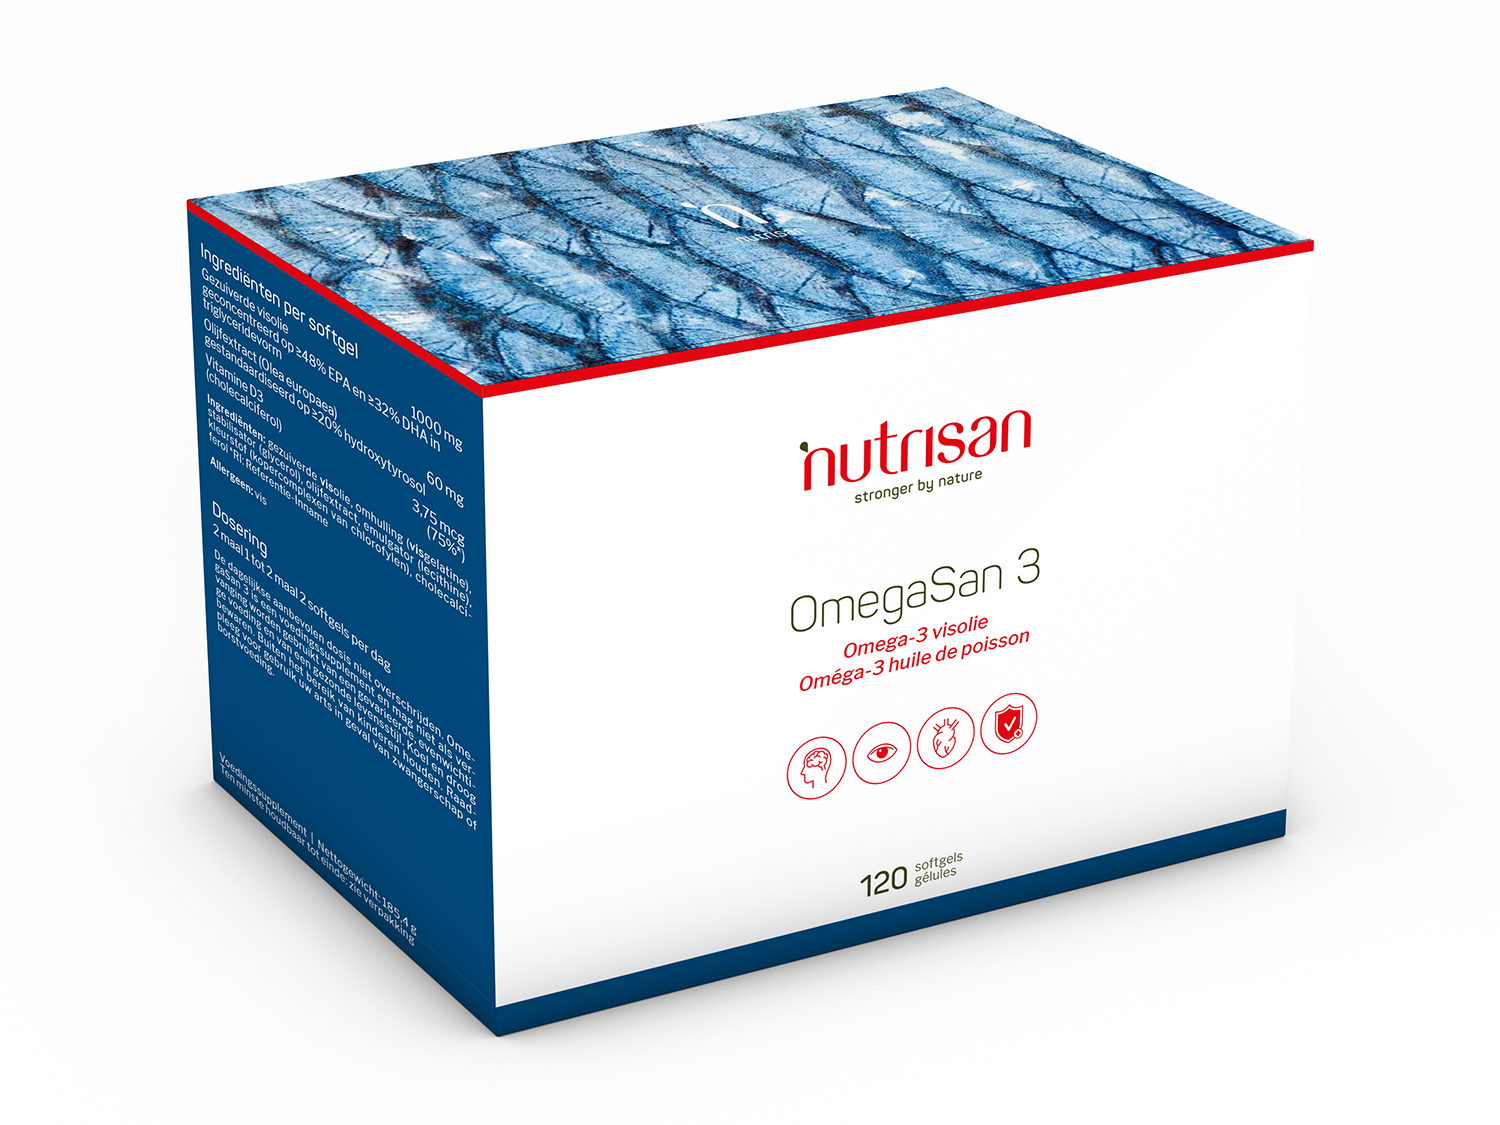 OmegaSan 3 (1000 mg) - 120 softgels